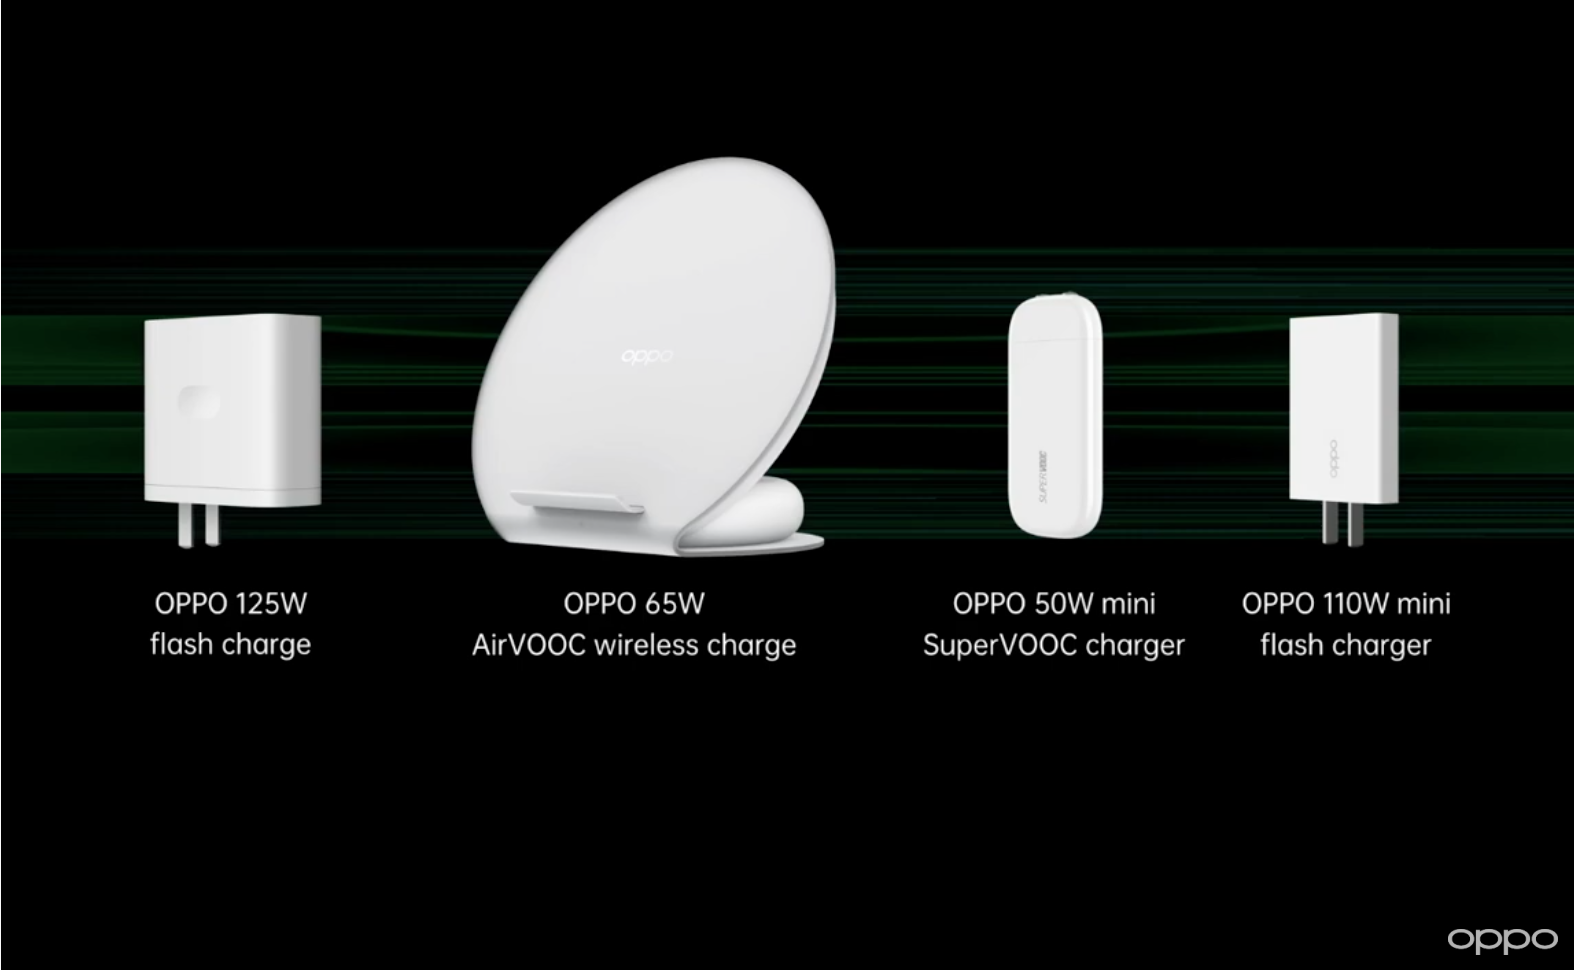 OPPO, 125W flash charge, 125W, 65W AirVooc, 65W wireless charger, 50w mini Supervooc charger, 110w mini flash charger